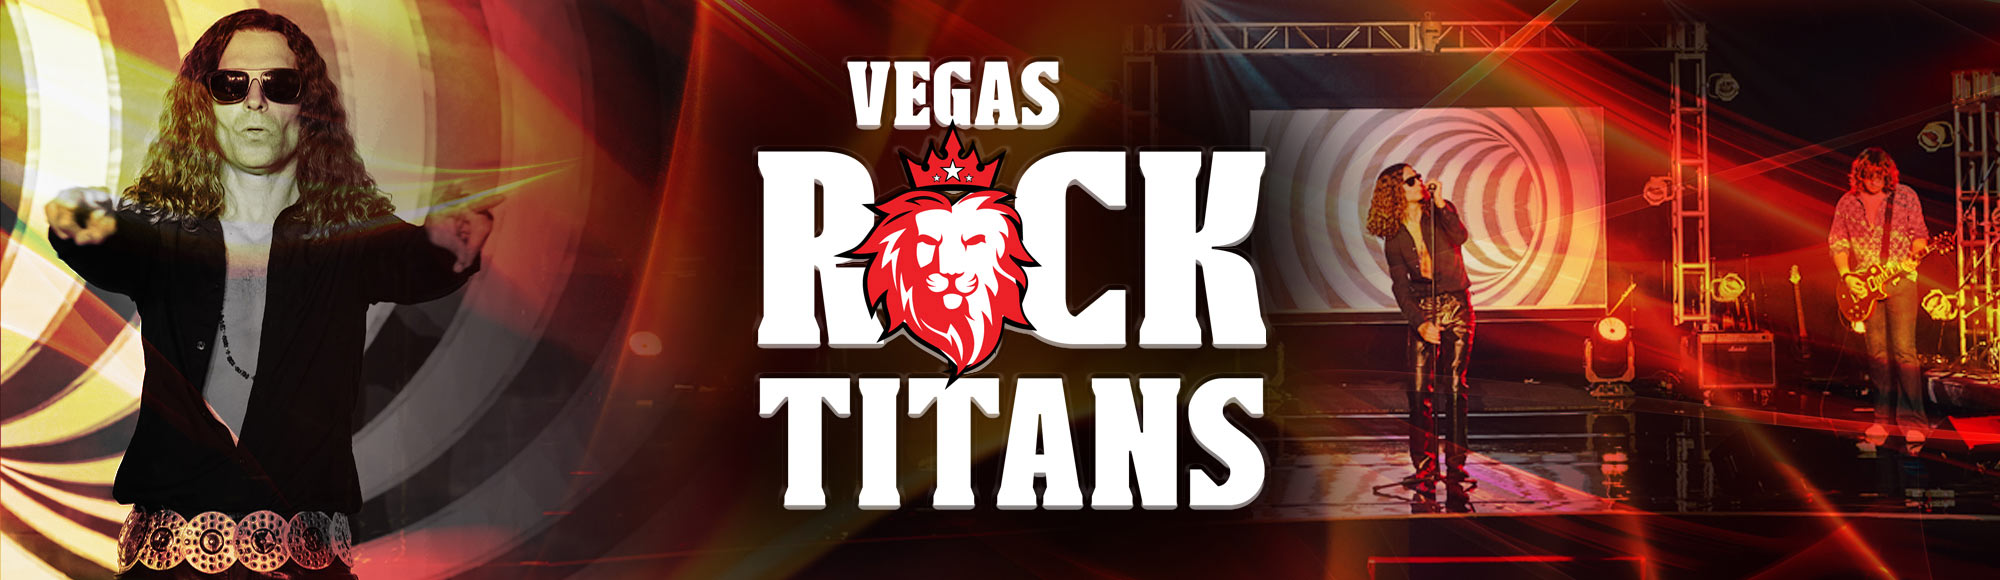 Vegas Rock Titans show